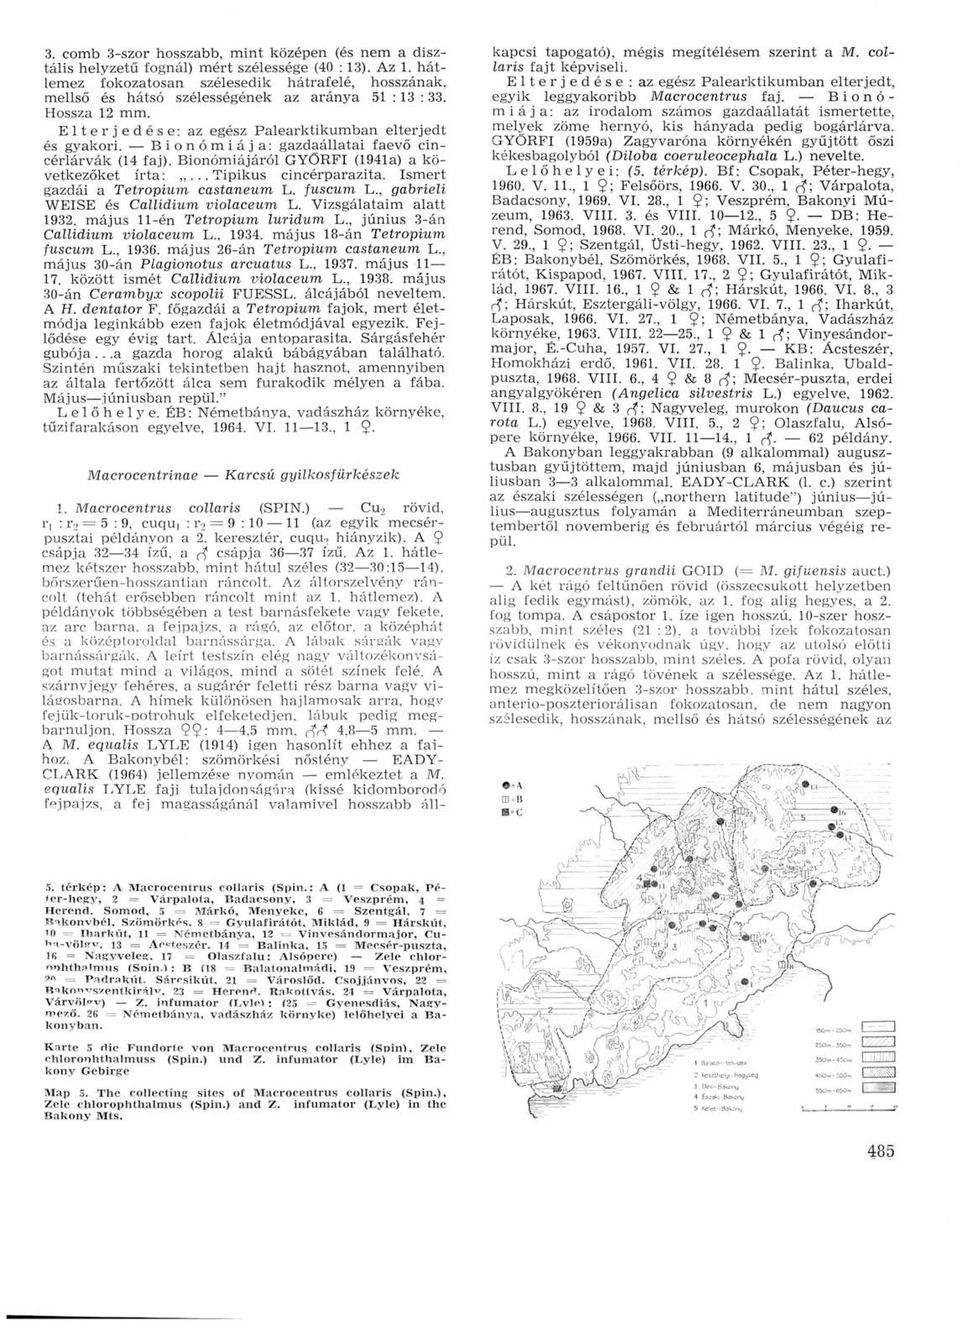 Bionómiája: gazdaállatai faevő cincérlárvák (14 faj). Bionómiájáról GYÖRFI (1941a) a következőket írta:...tipikus cincérparazita. Ismert gazdái a Tetropium castaneum L. fuscum L.